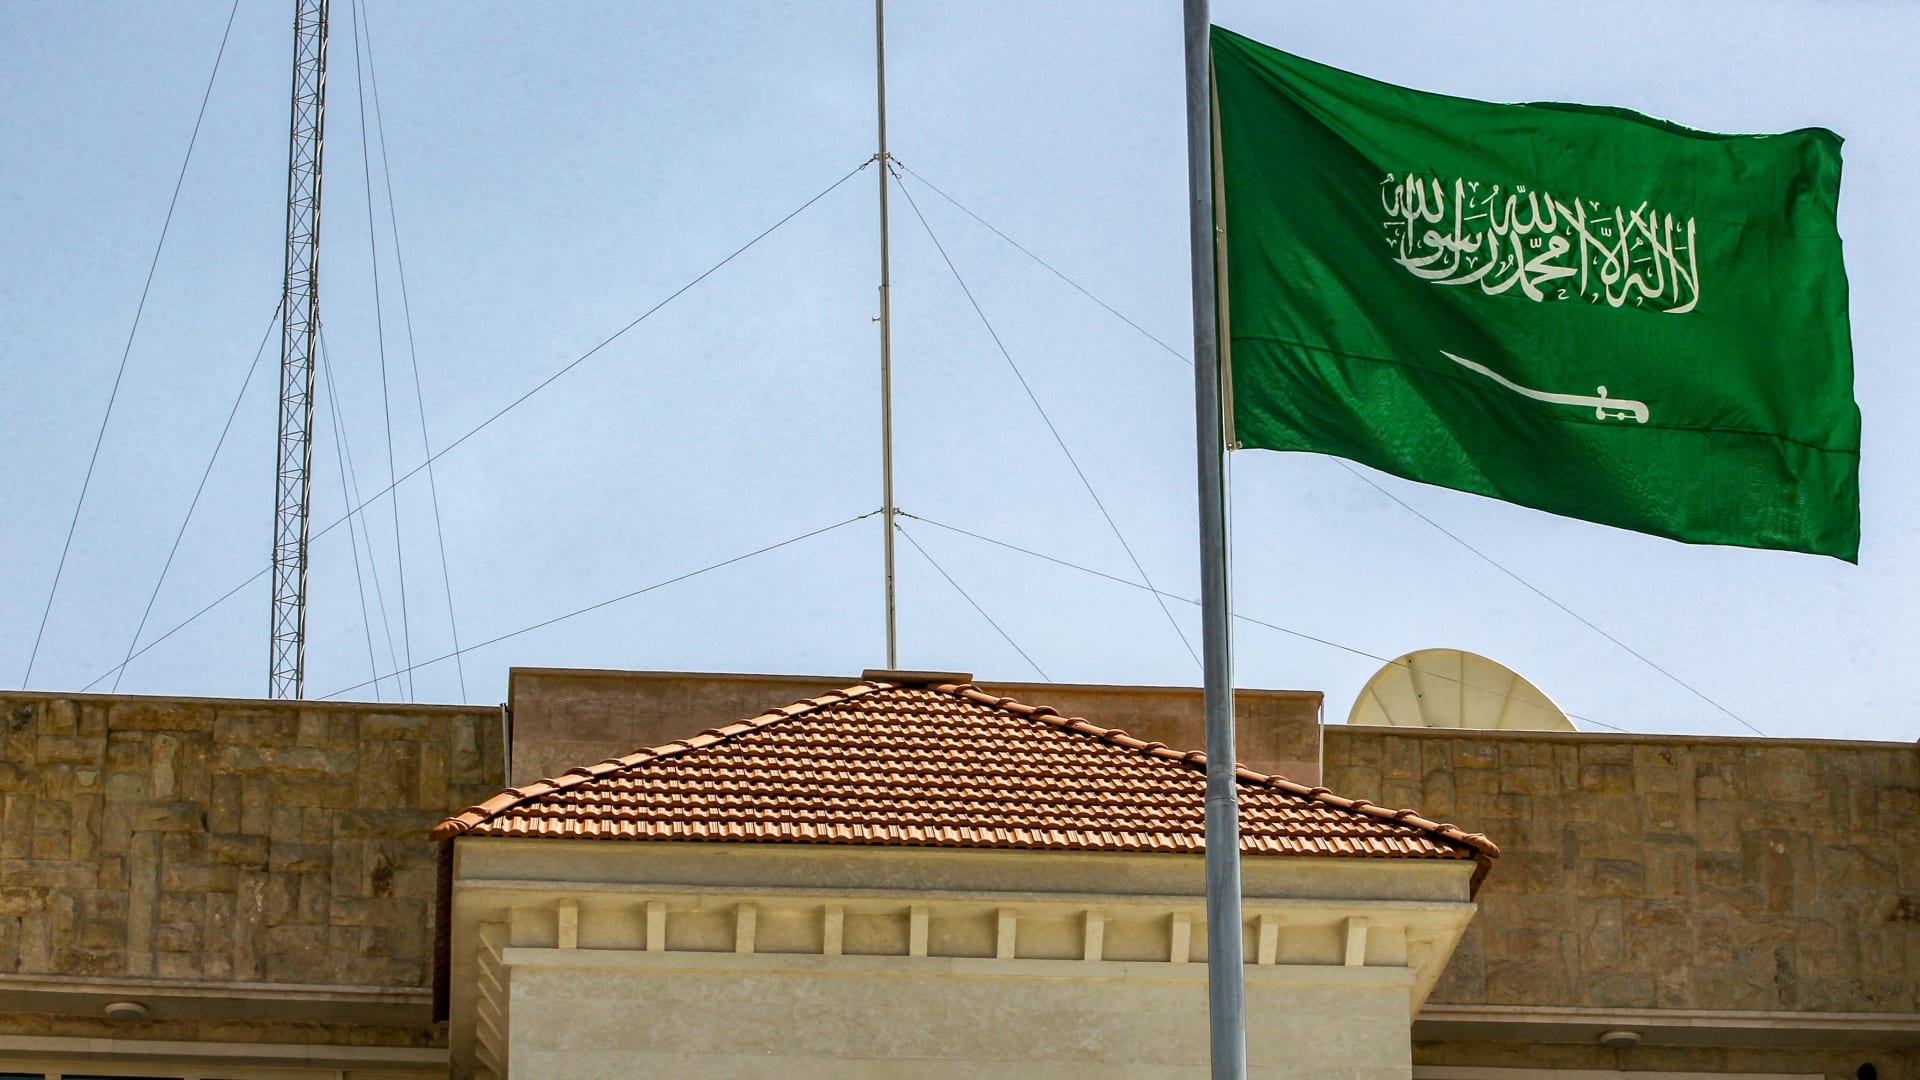 السعودية تعلن رفع تعليق السفر بـ"الهوية الوطنية" بين دول الخليج